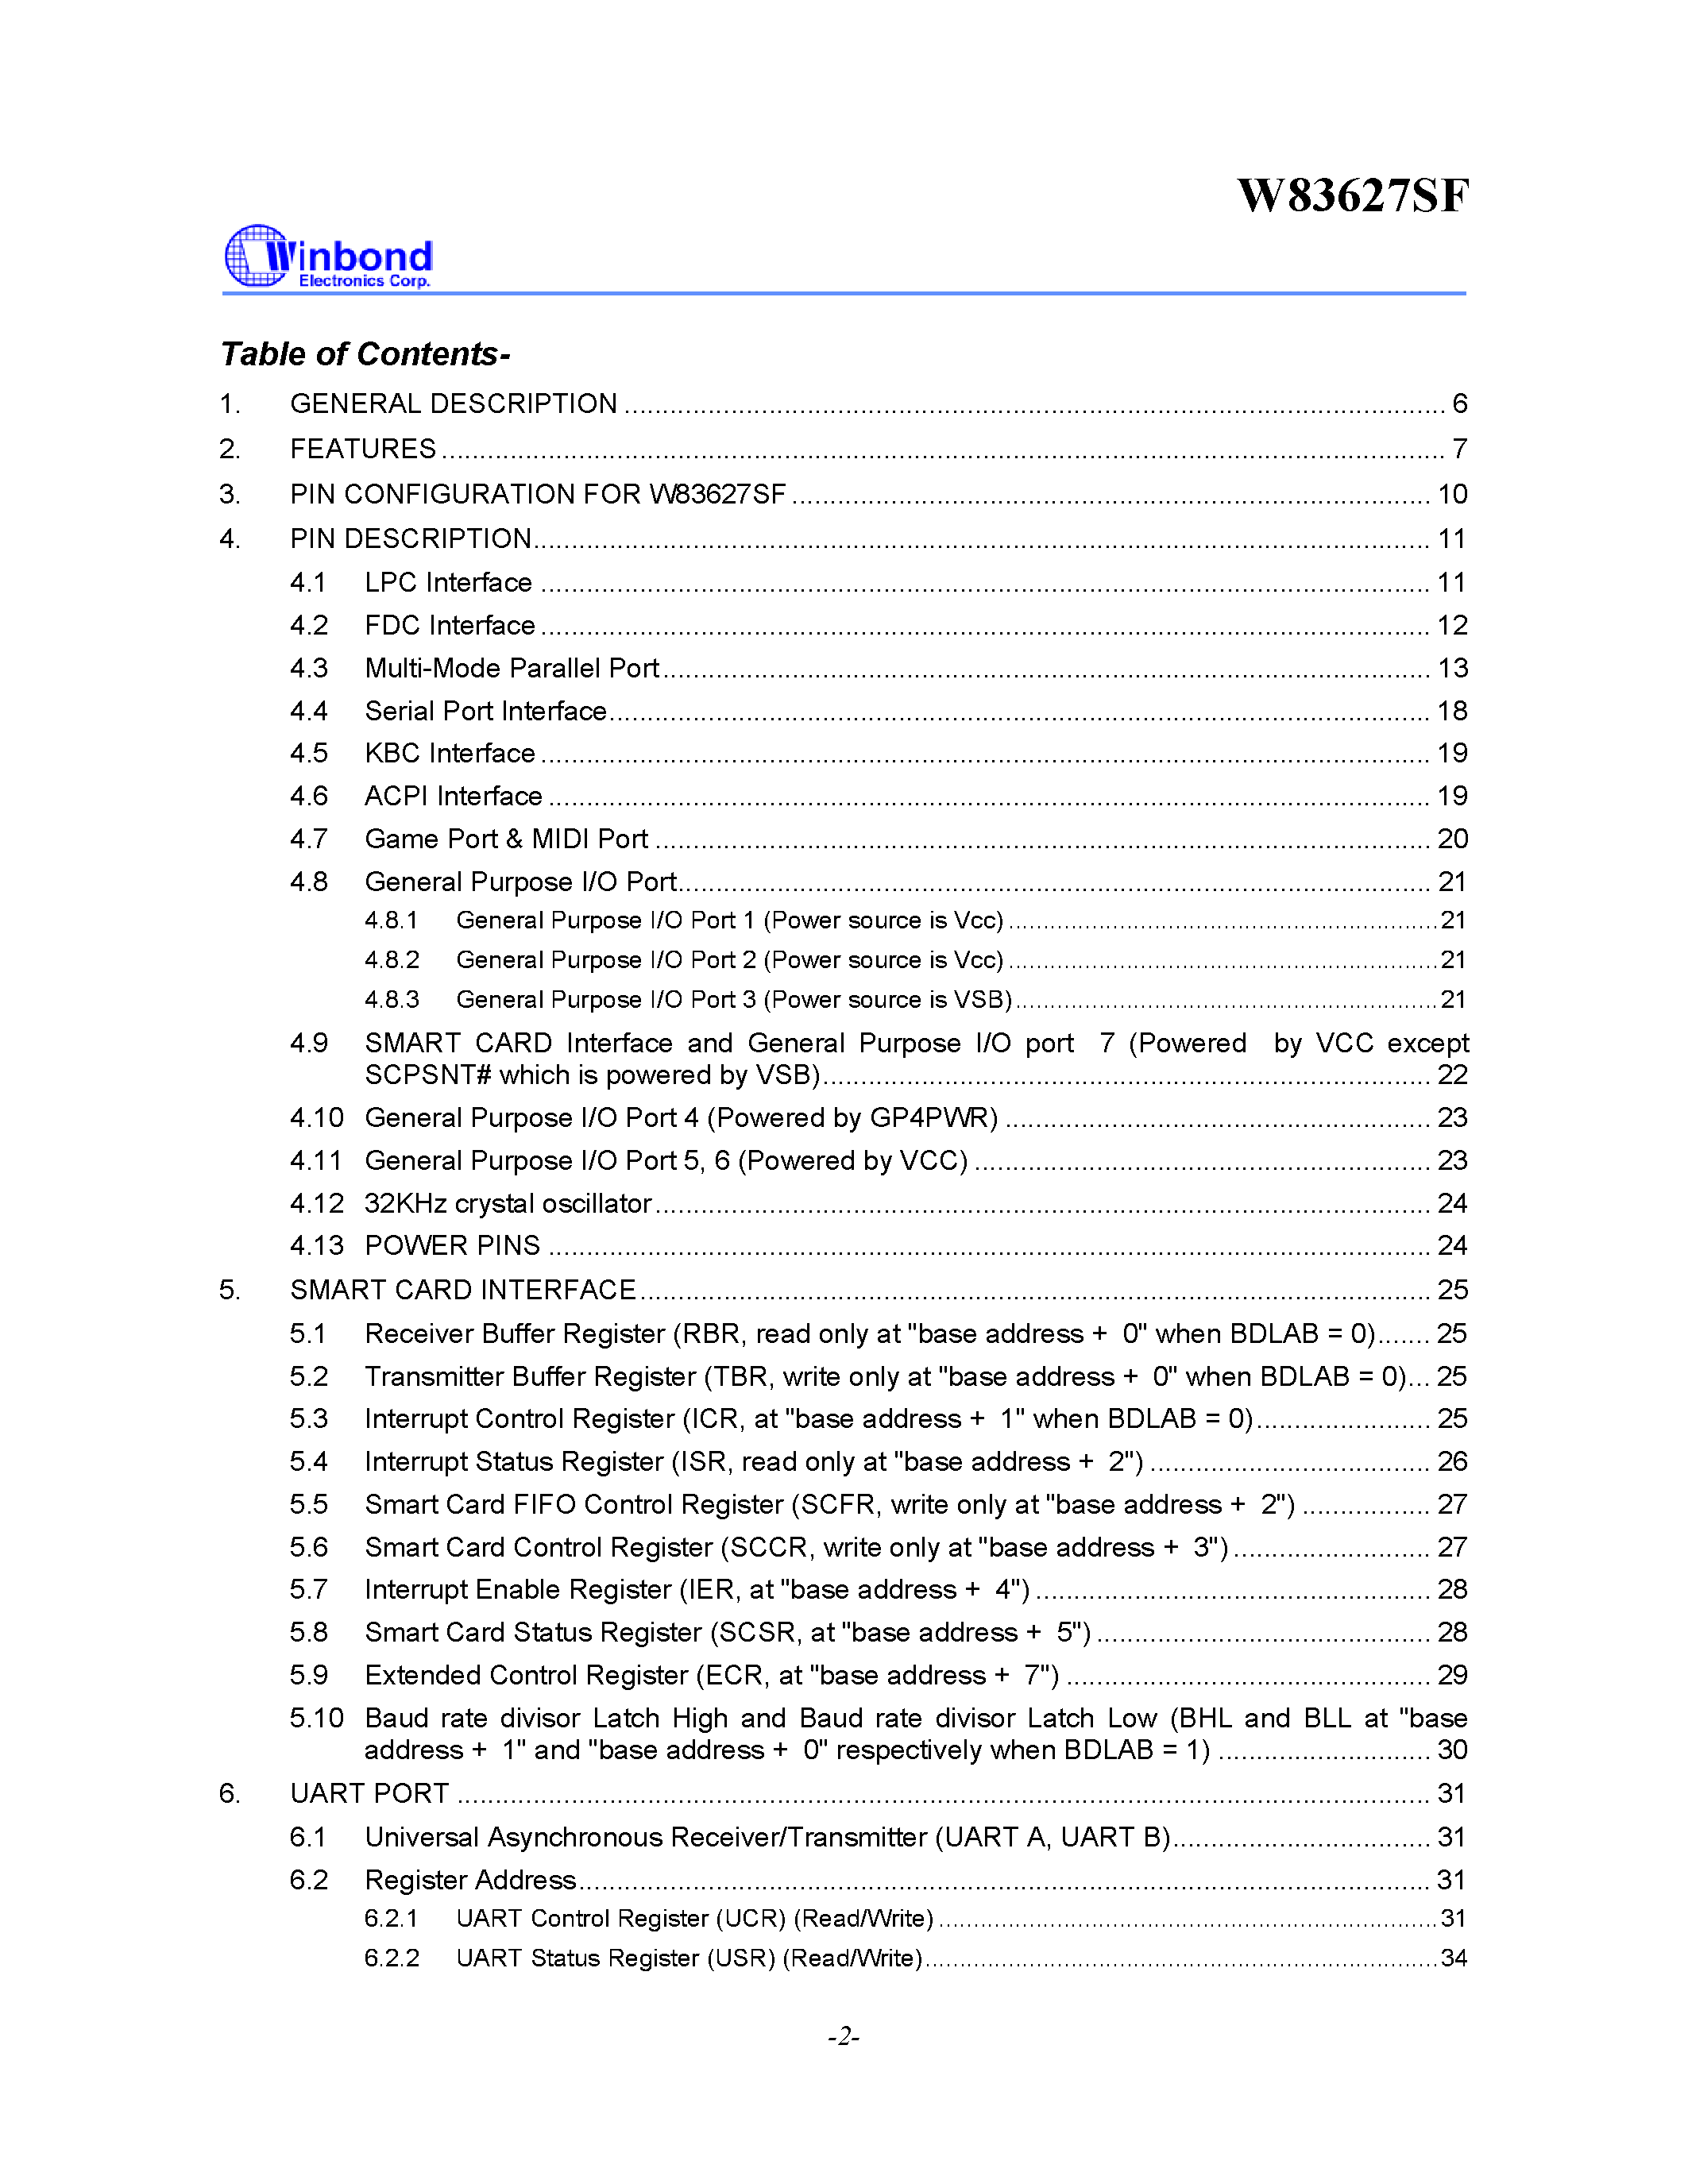 Datasheet W83627SF - WINBOND I/O page 2